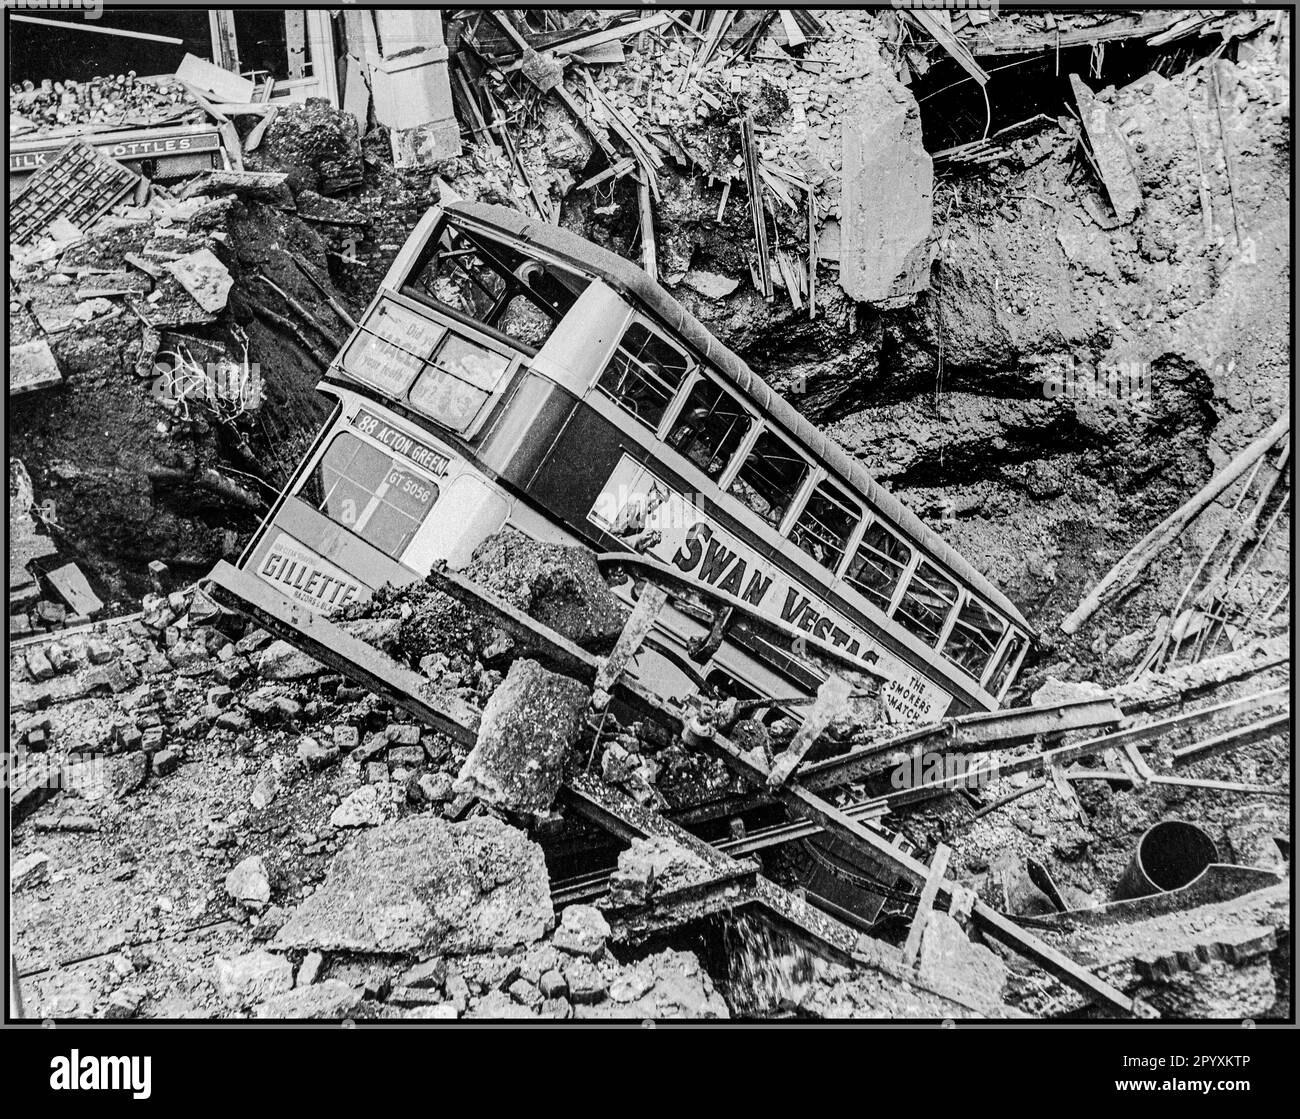 WW2 der Londoner Blitz mit einem Londoner Bus in einem Bombenkrater nach einem Terroranschlag von Nazi-Deutschland. Nach einem Bombenangriff liegt ein Bus in einem Krater in Balham, Süd-London. Luftschäden in Großbritannien während des Zweiten Weltkriegs. Der zweite Weltkrieg Stockfoto